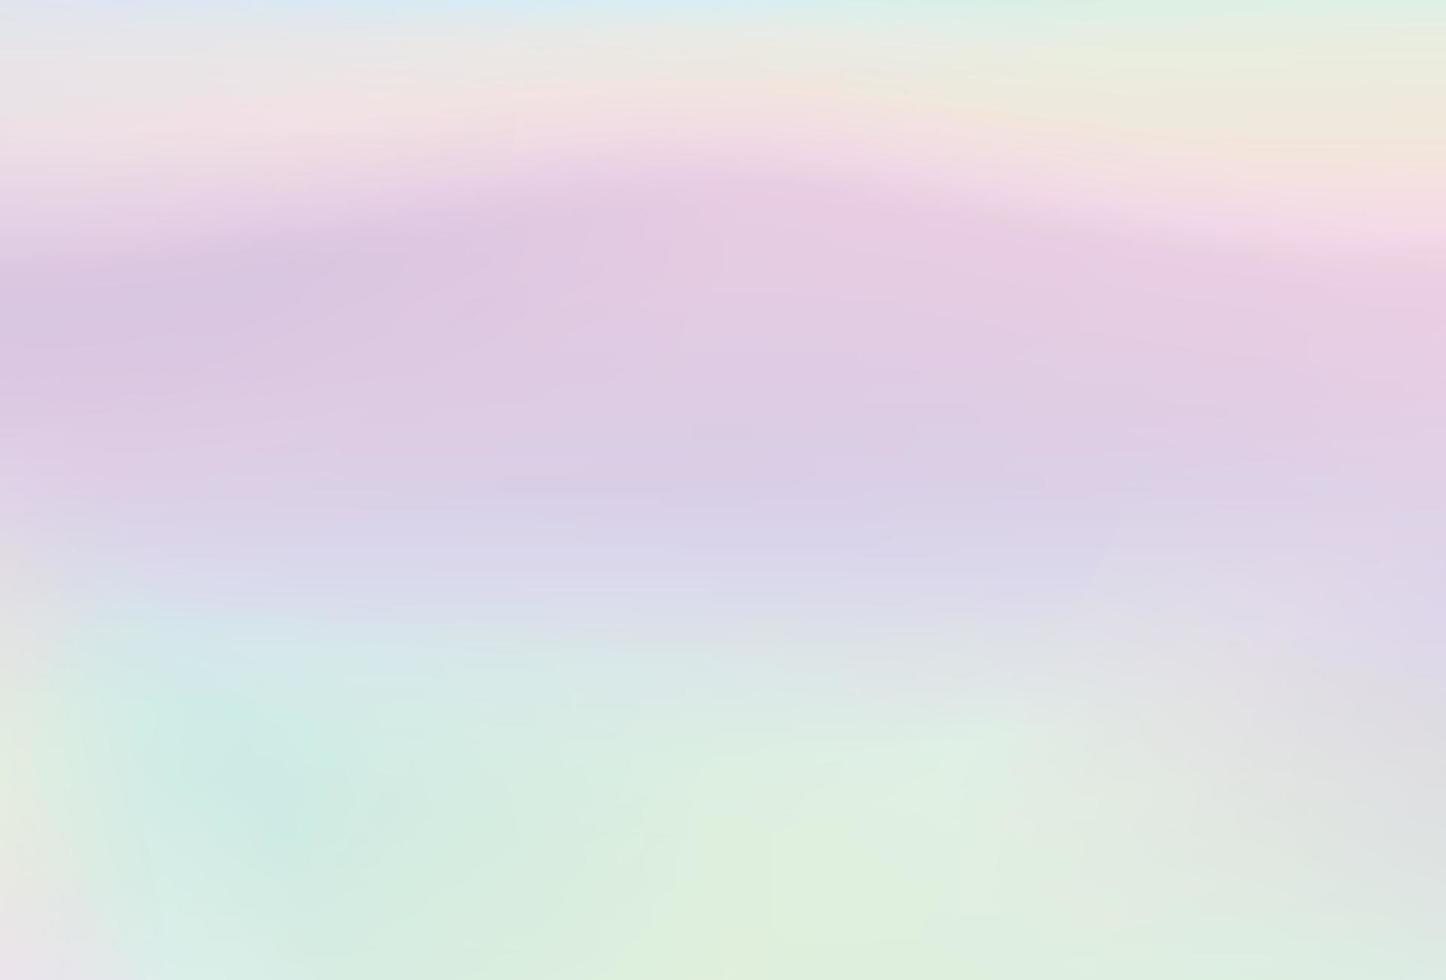 Regenbogen-Einhorn-Hintergrund. Regenbogen-Einhorn-Hintergrund vektor